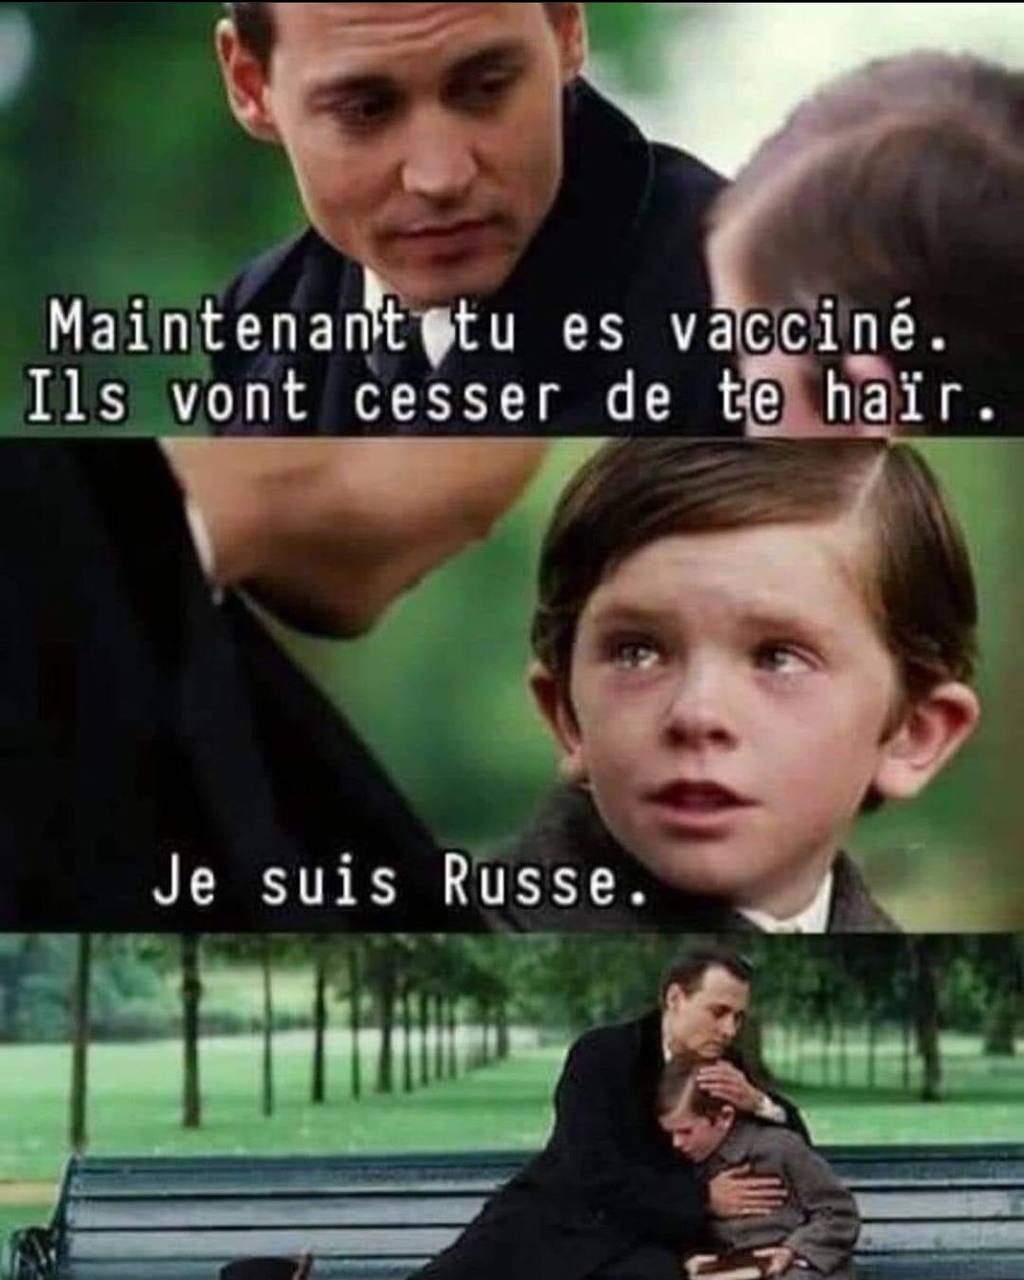 Maintenant que tu est vacciné, ils vont